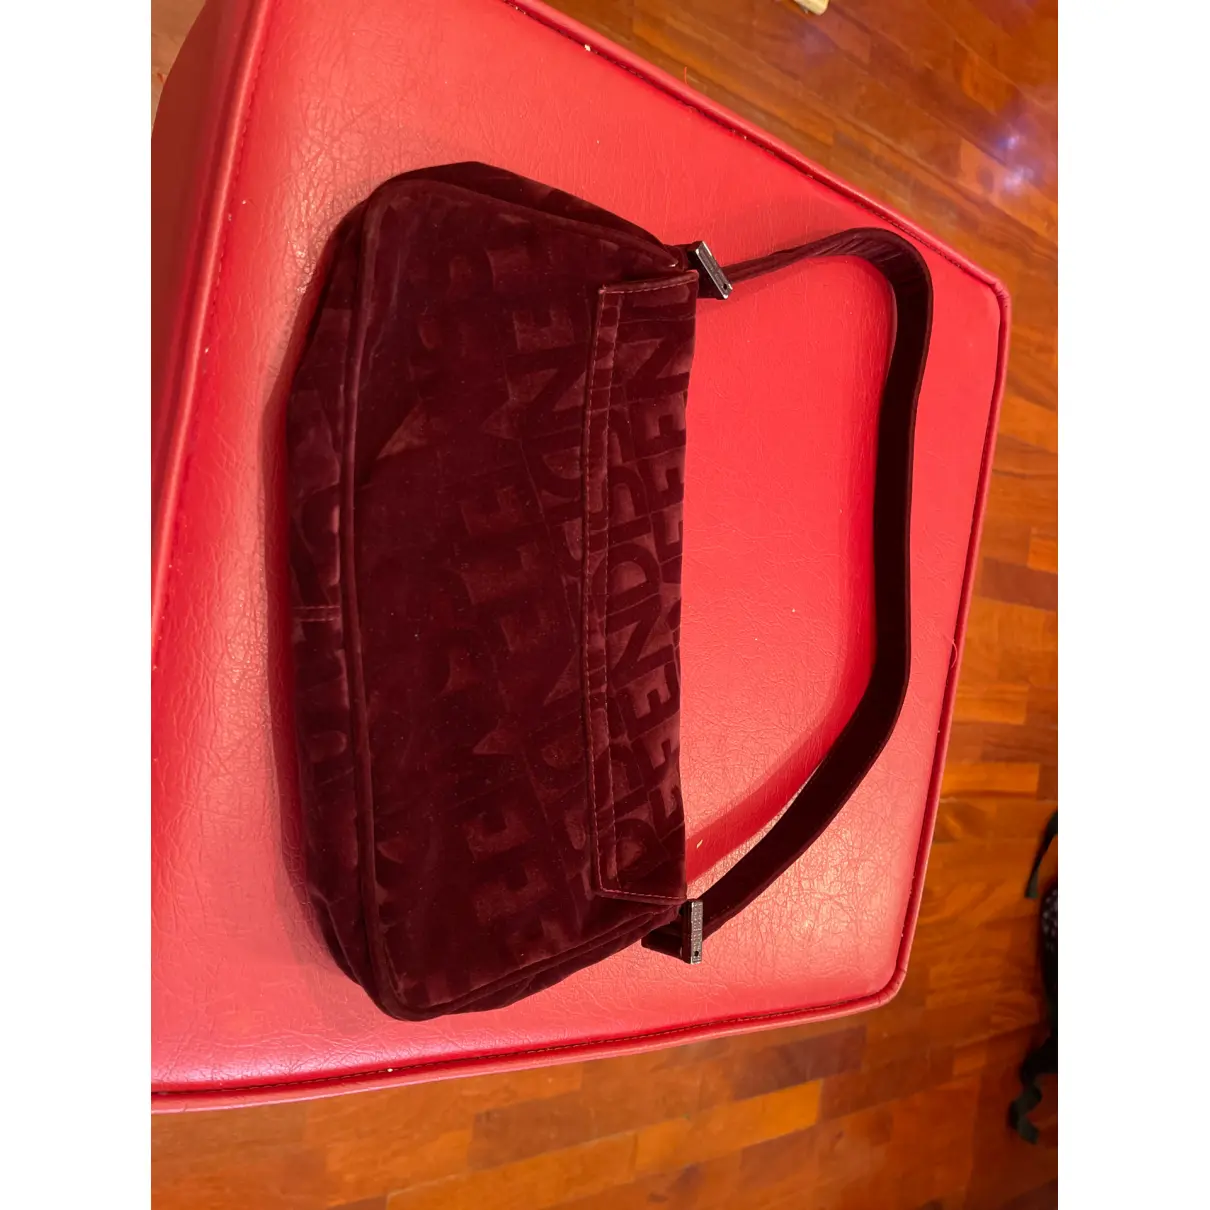 Buy Fendissime Velvet handbag online